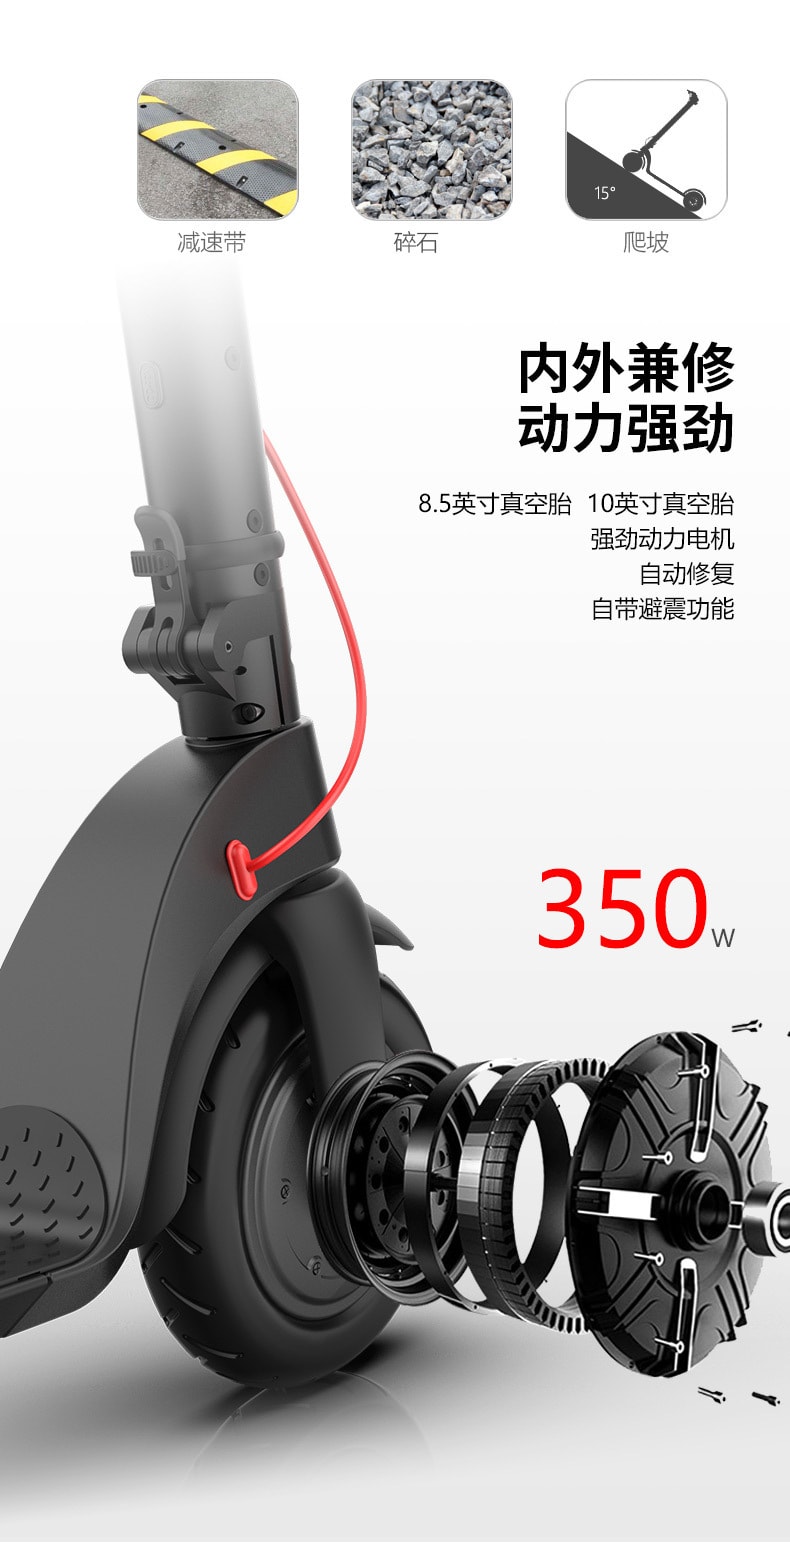 中国直邮 喜乐坊HX电动滑板车成人两轮折叠便携电动车 续航20-25km 轮子10寸